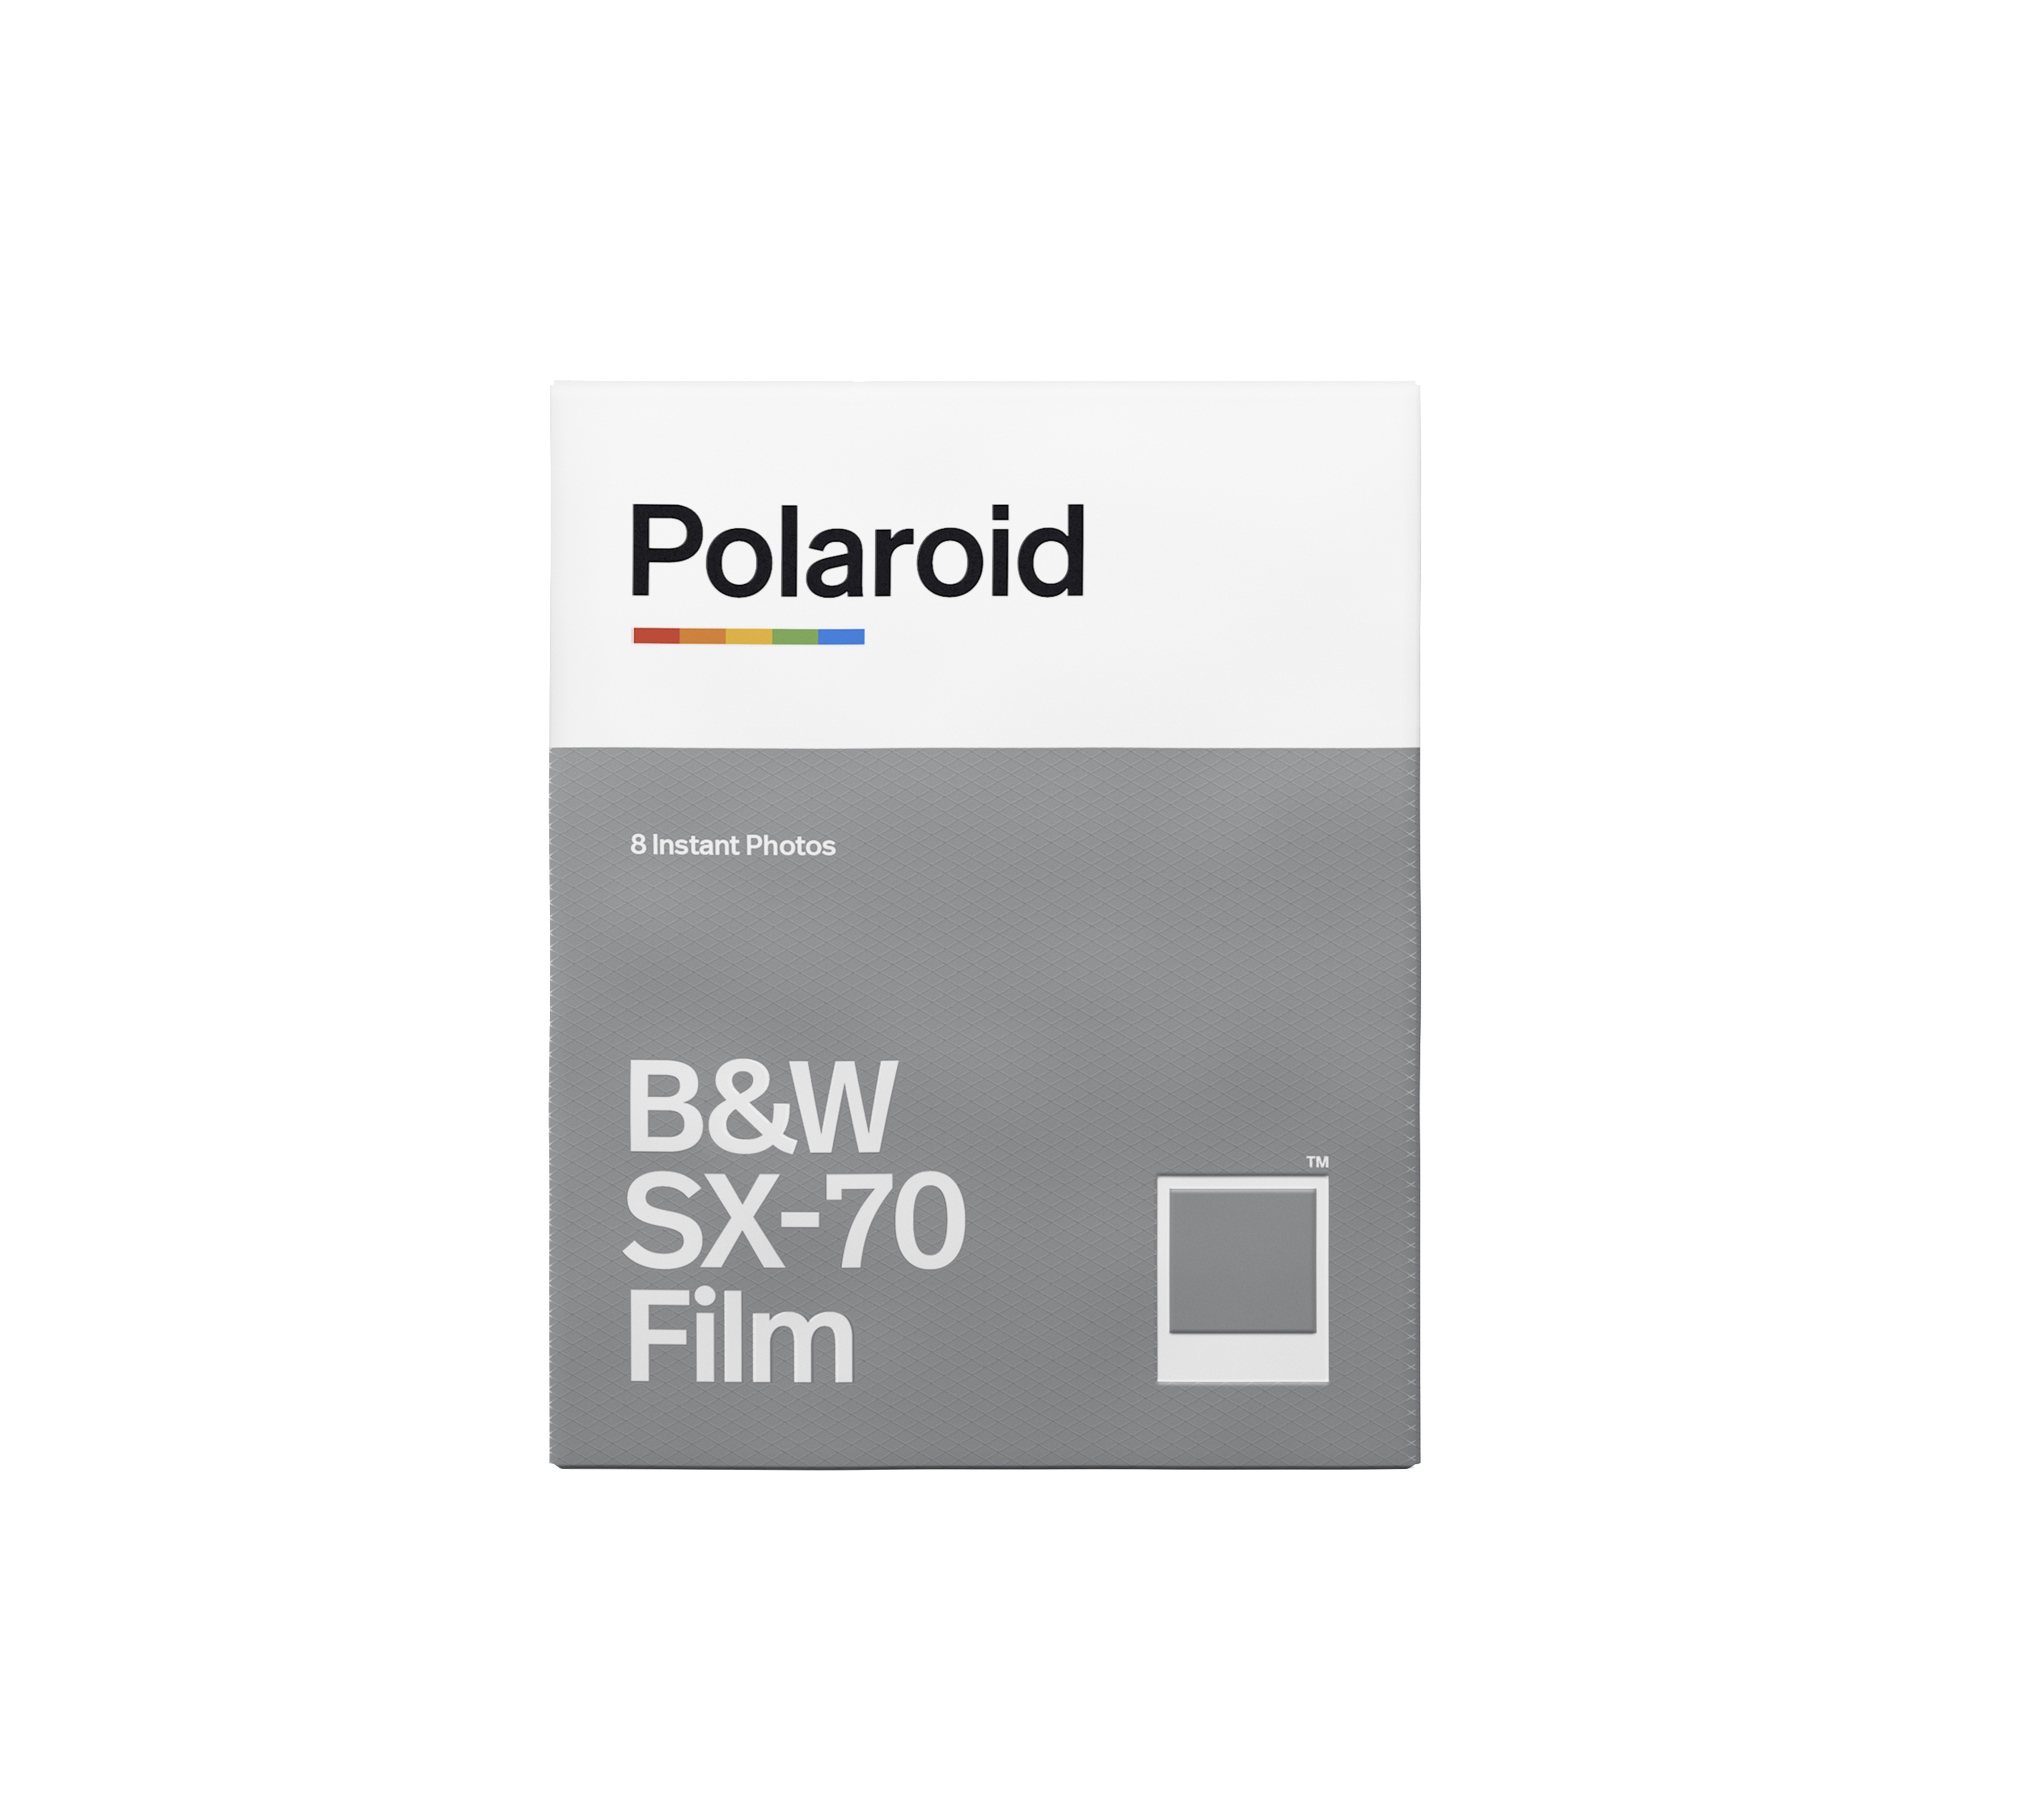 Sofortbildfilm SX-70 Schwarz-Weiß für POLAROID weißer Sofortbildfilm Rahmen